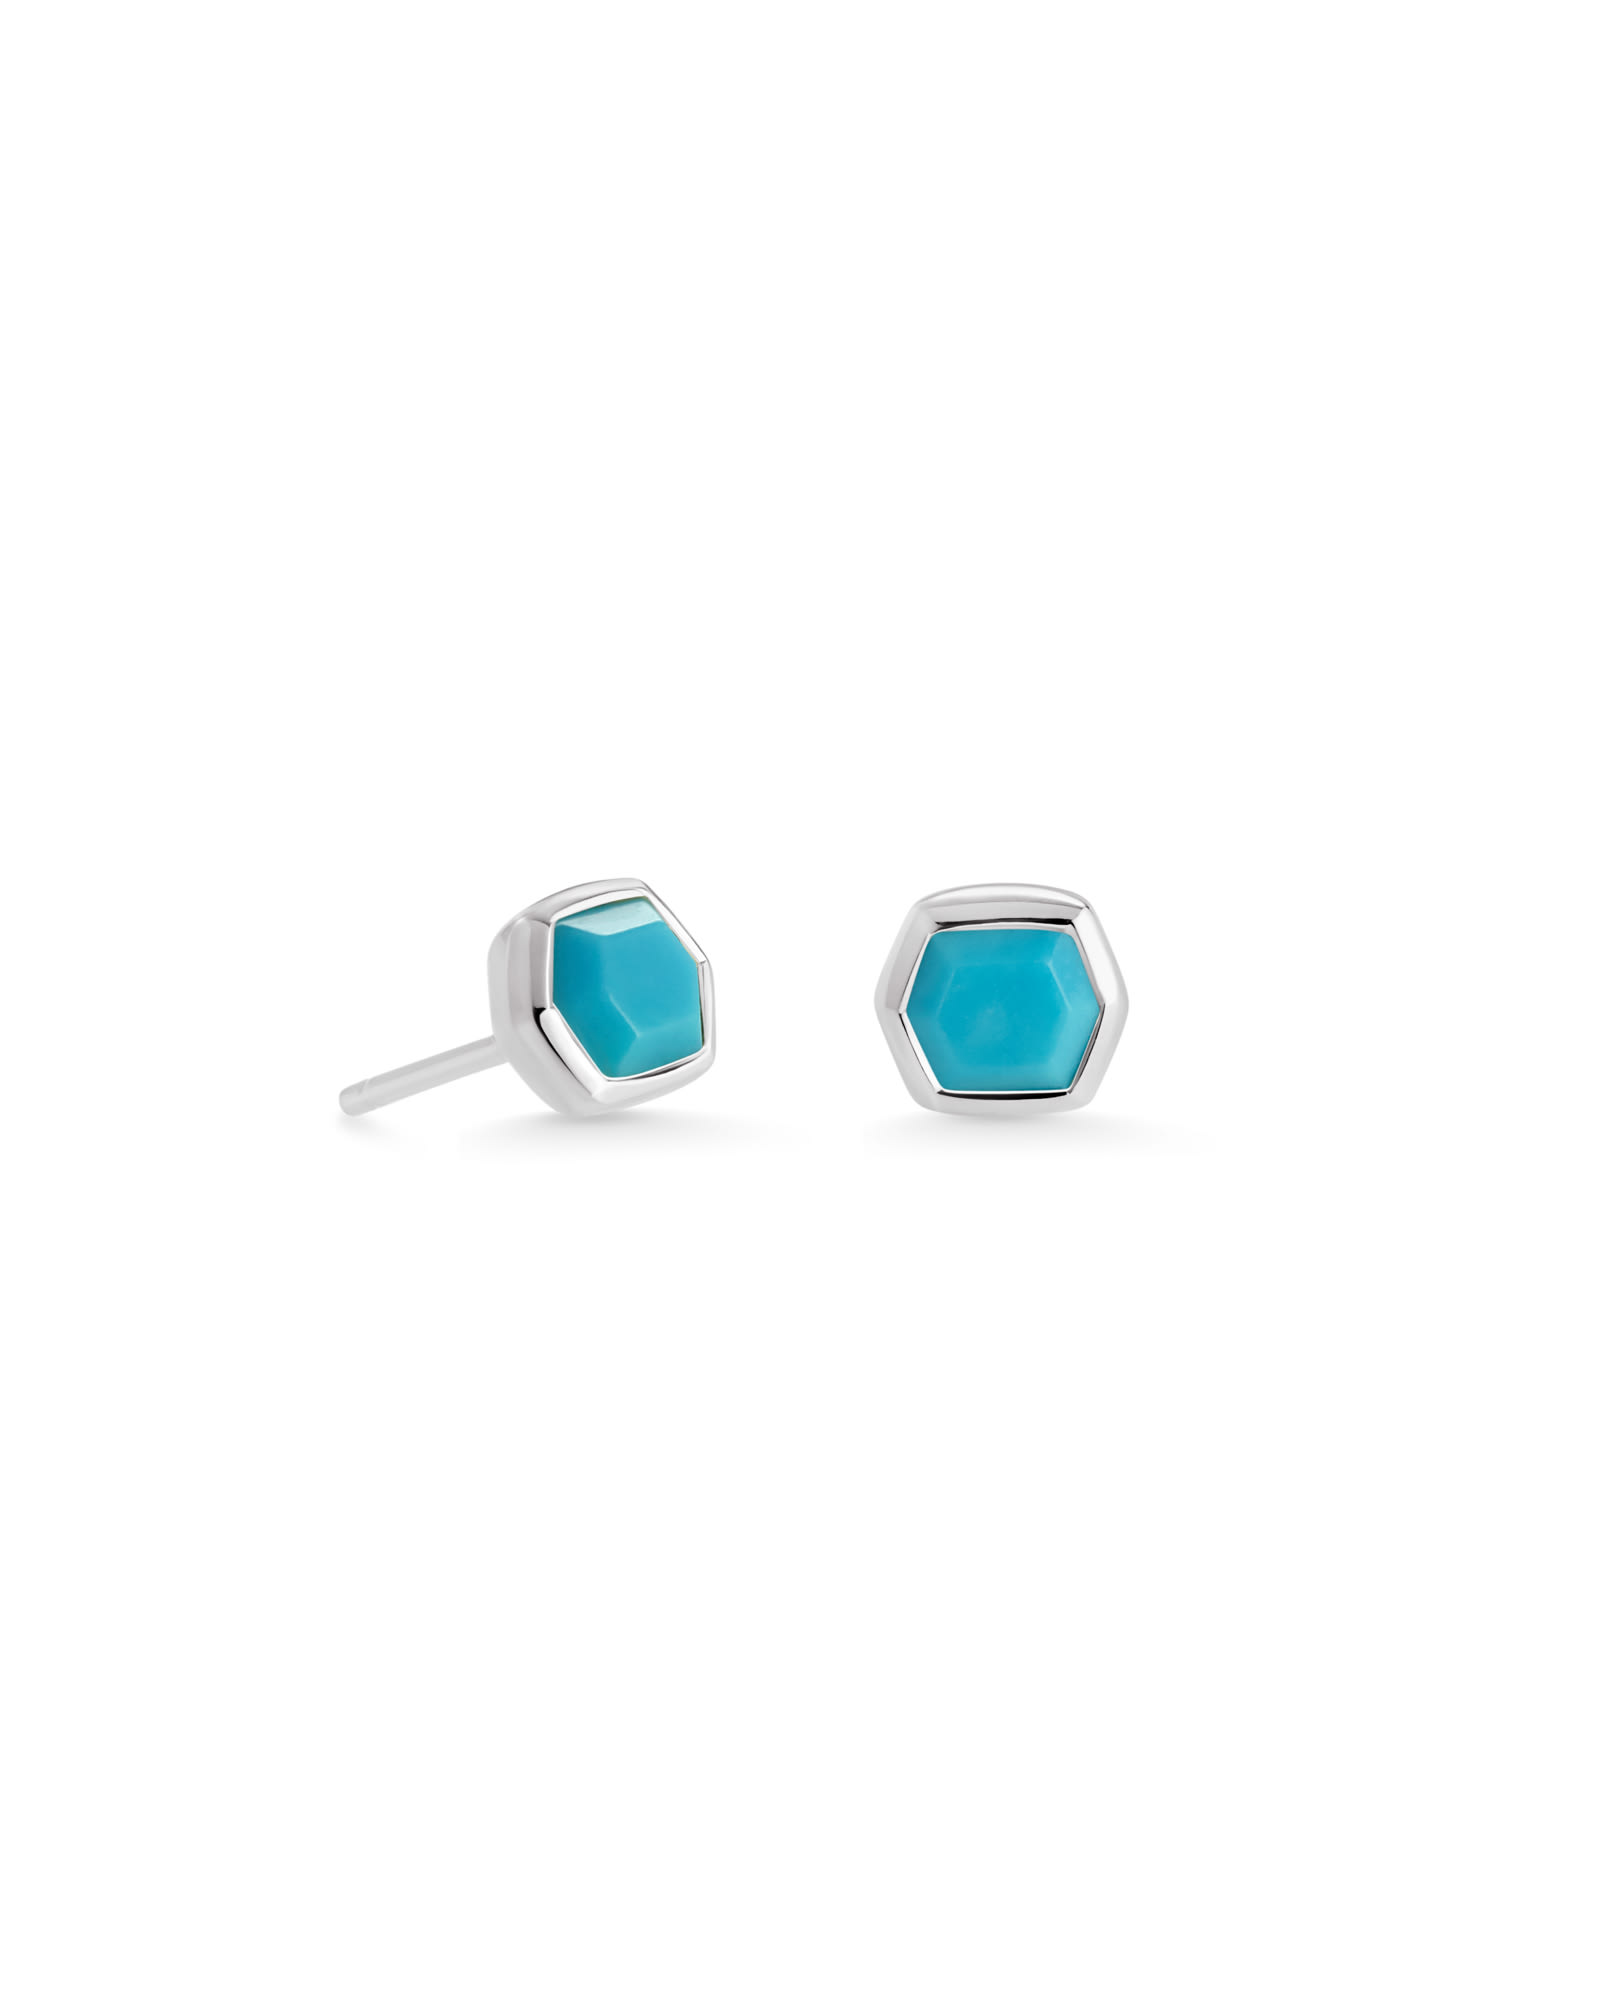 Davie Sterling Silver Stud Earrings in Turquoise | Kendra Scott